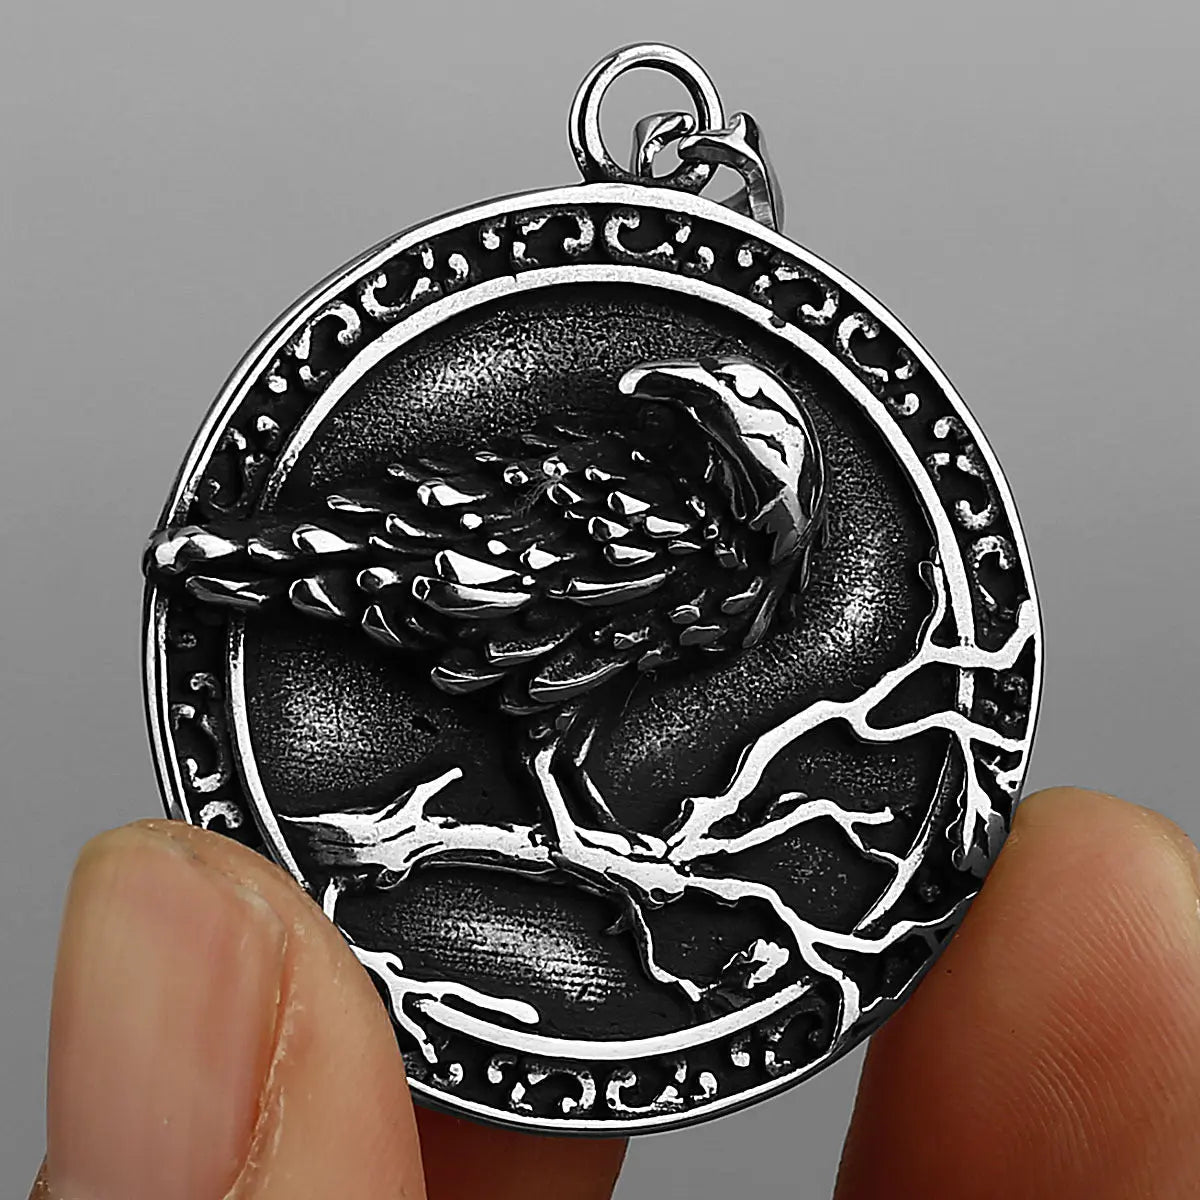 Viking Raven Pendant